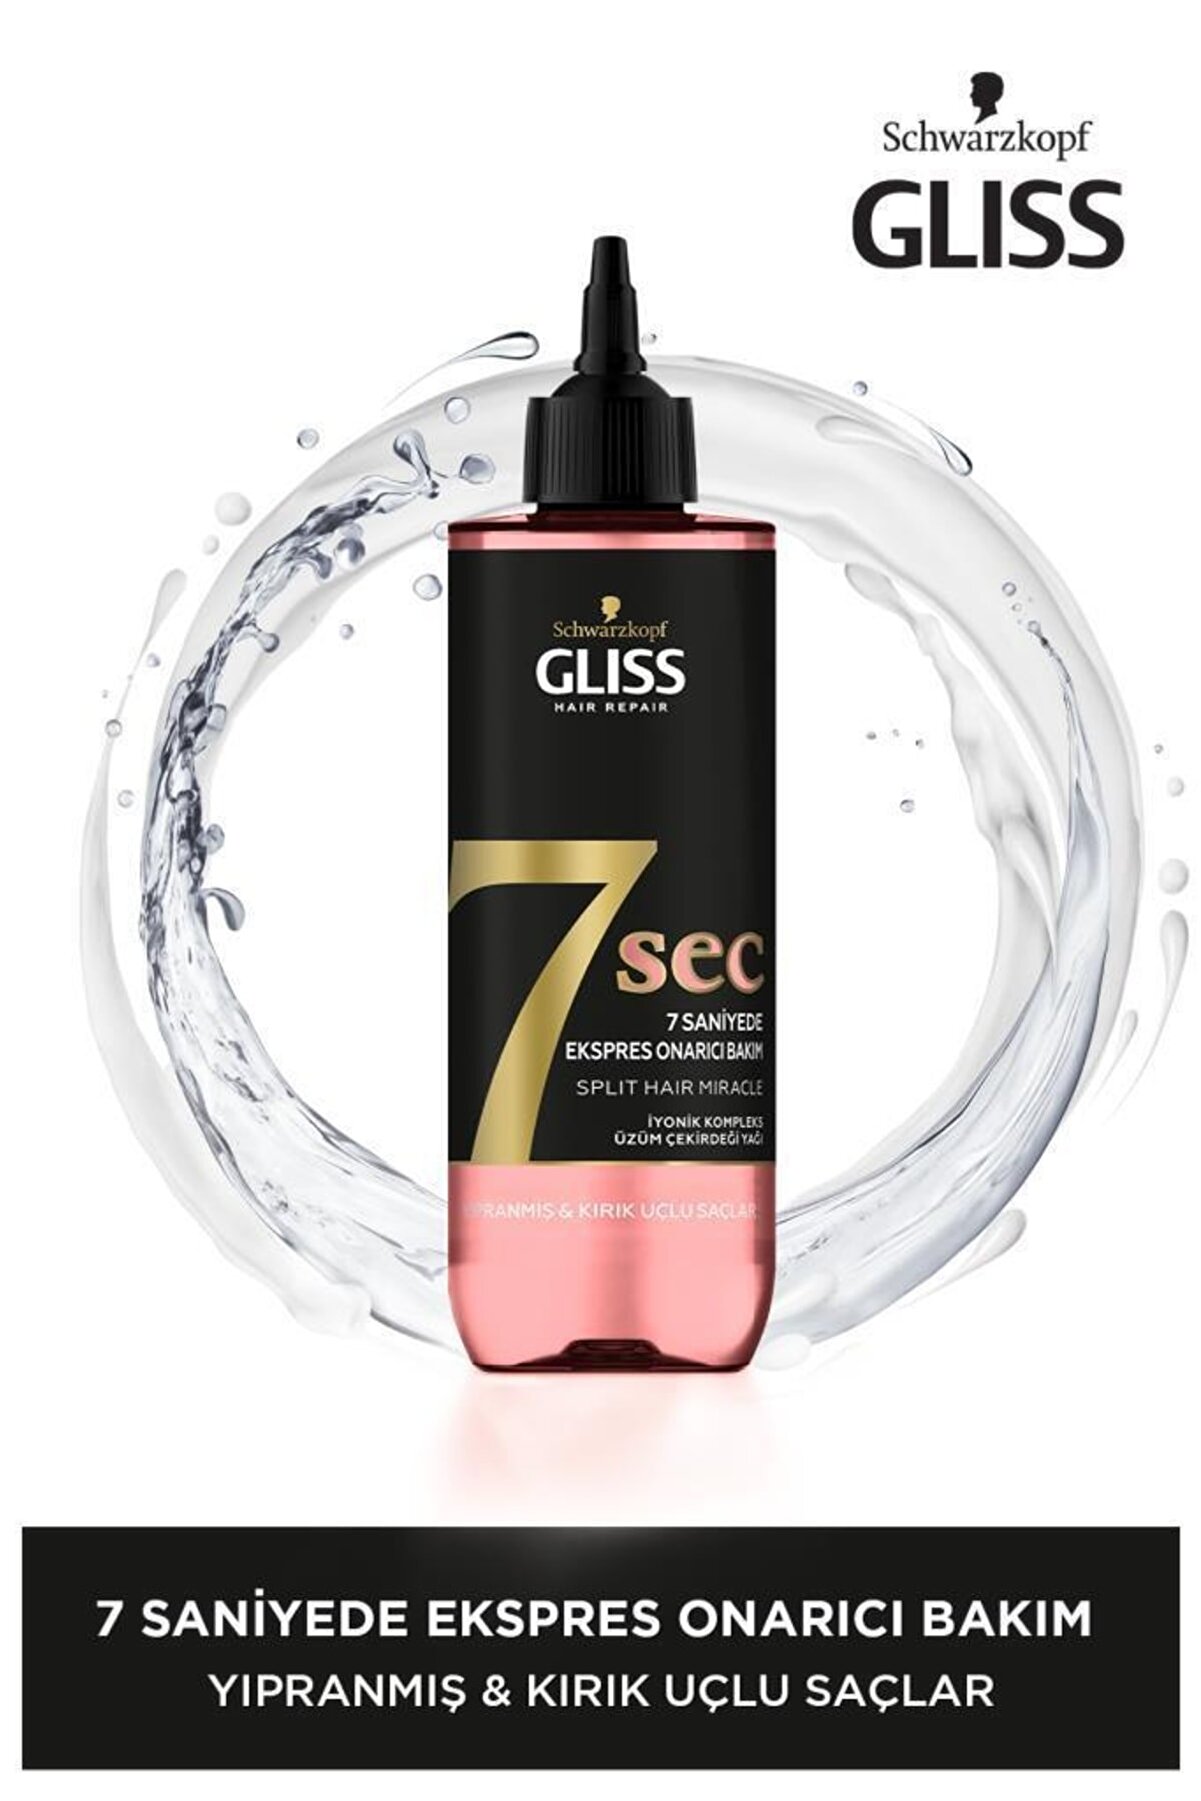 Gliss 7sec Ekspres Onarıcı Bakım Split Hair Miracle 200ml